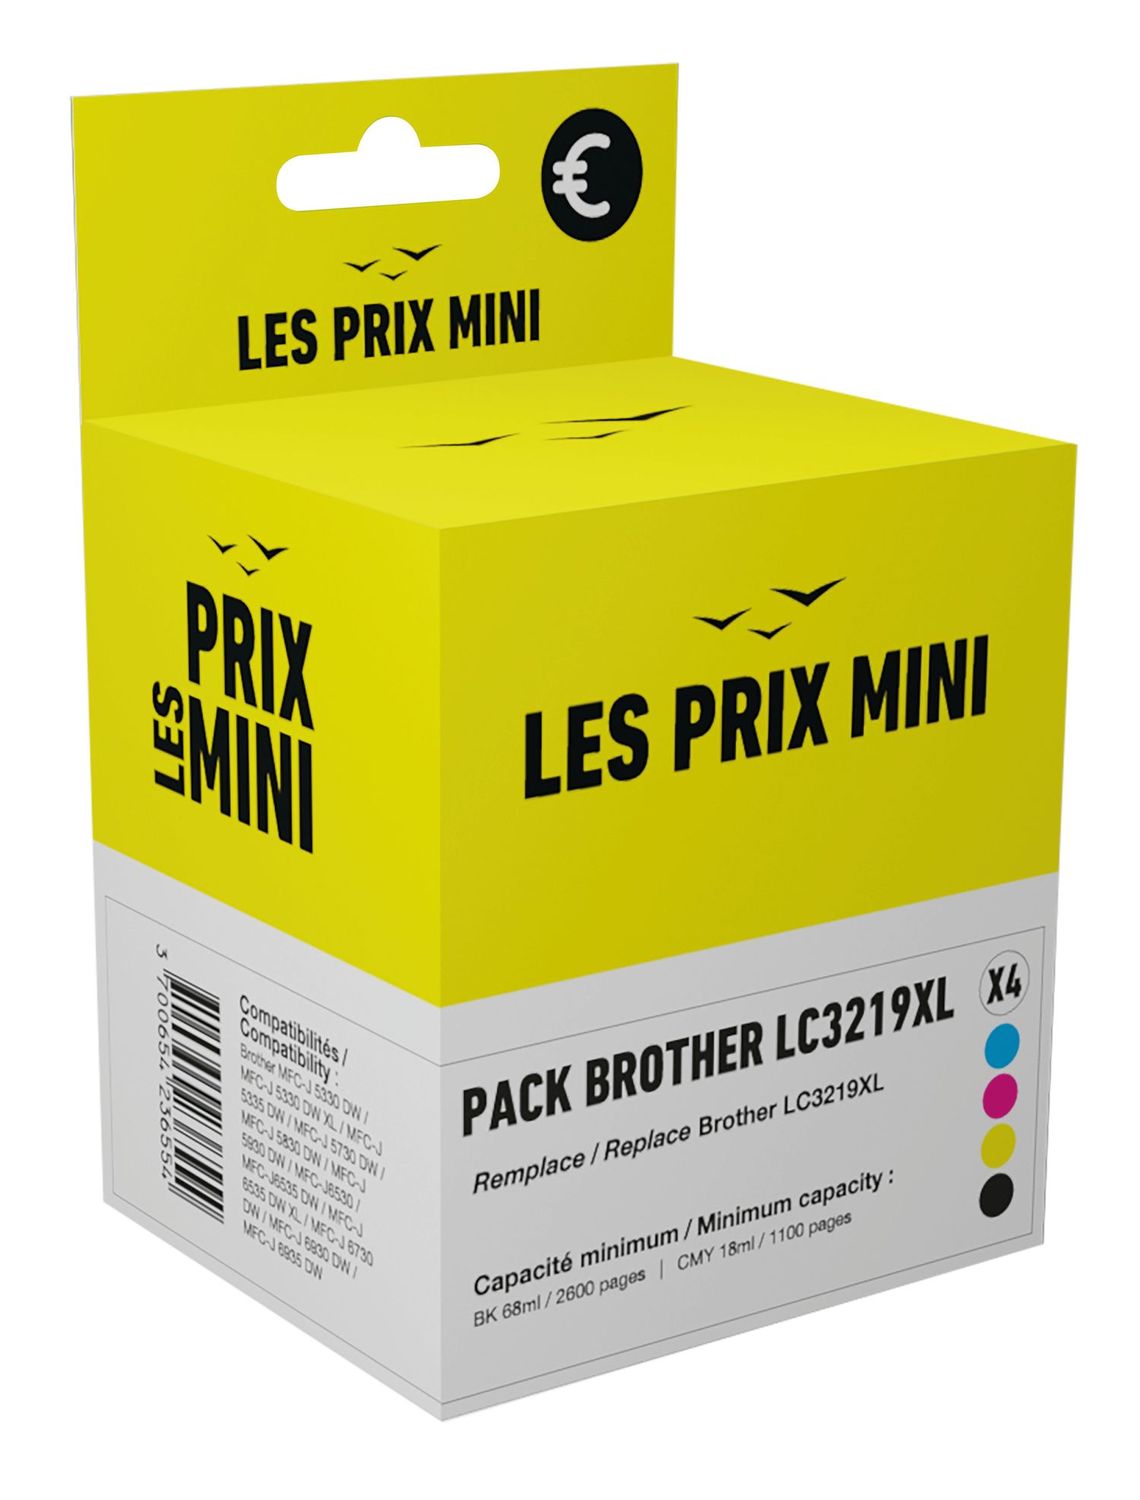 Cartouche compatible Brother LC3219XL - Pack de 4 - noir, cyan, magenta,  jaune - prix mini Pas Cher